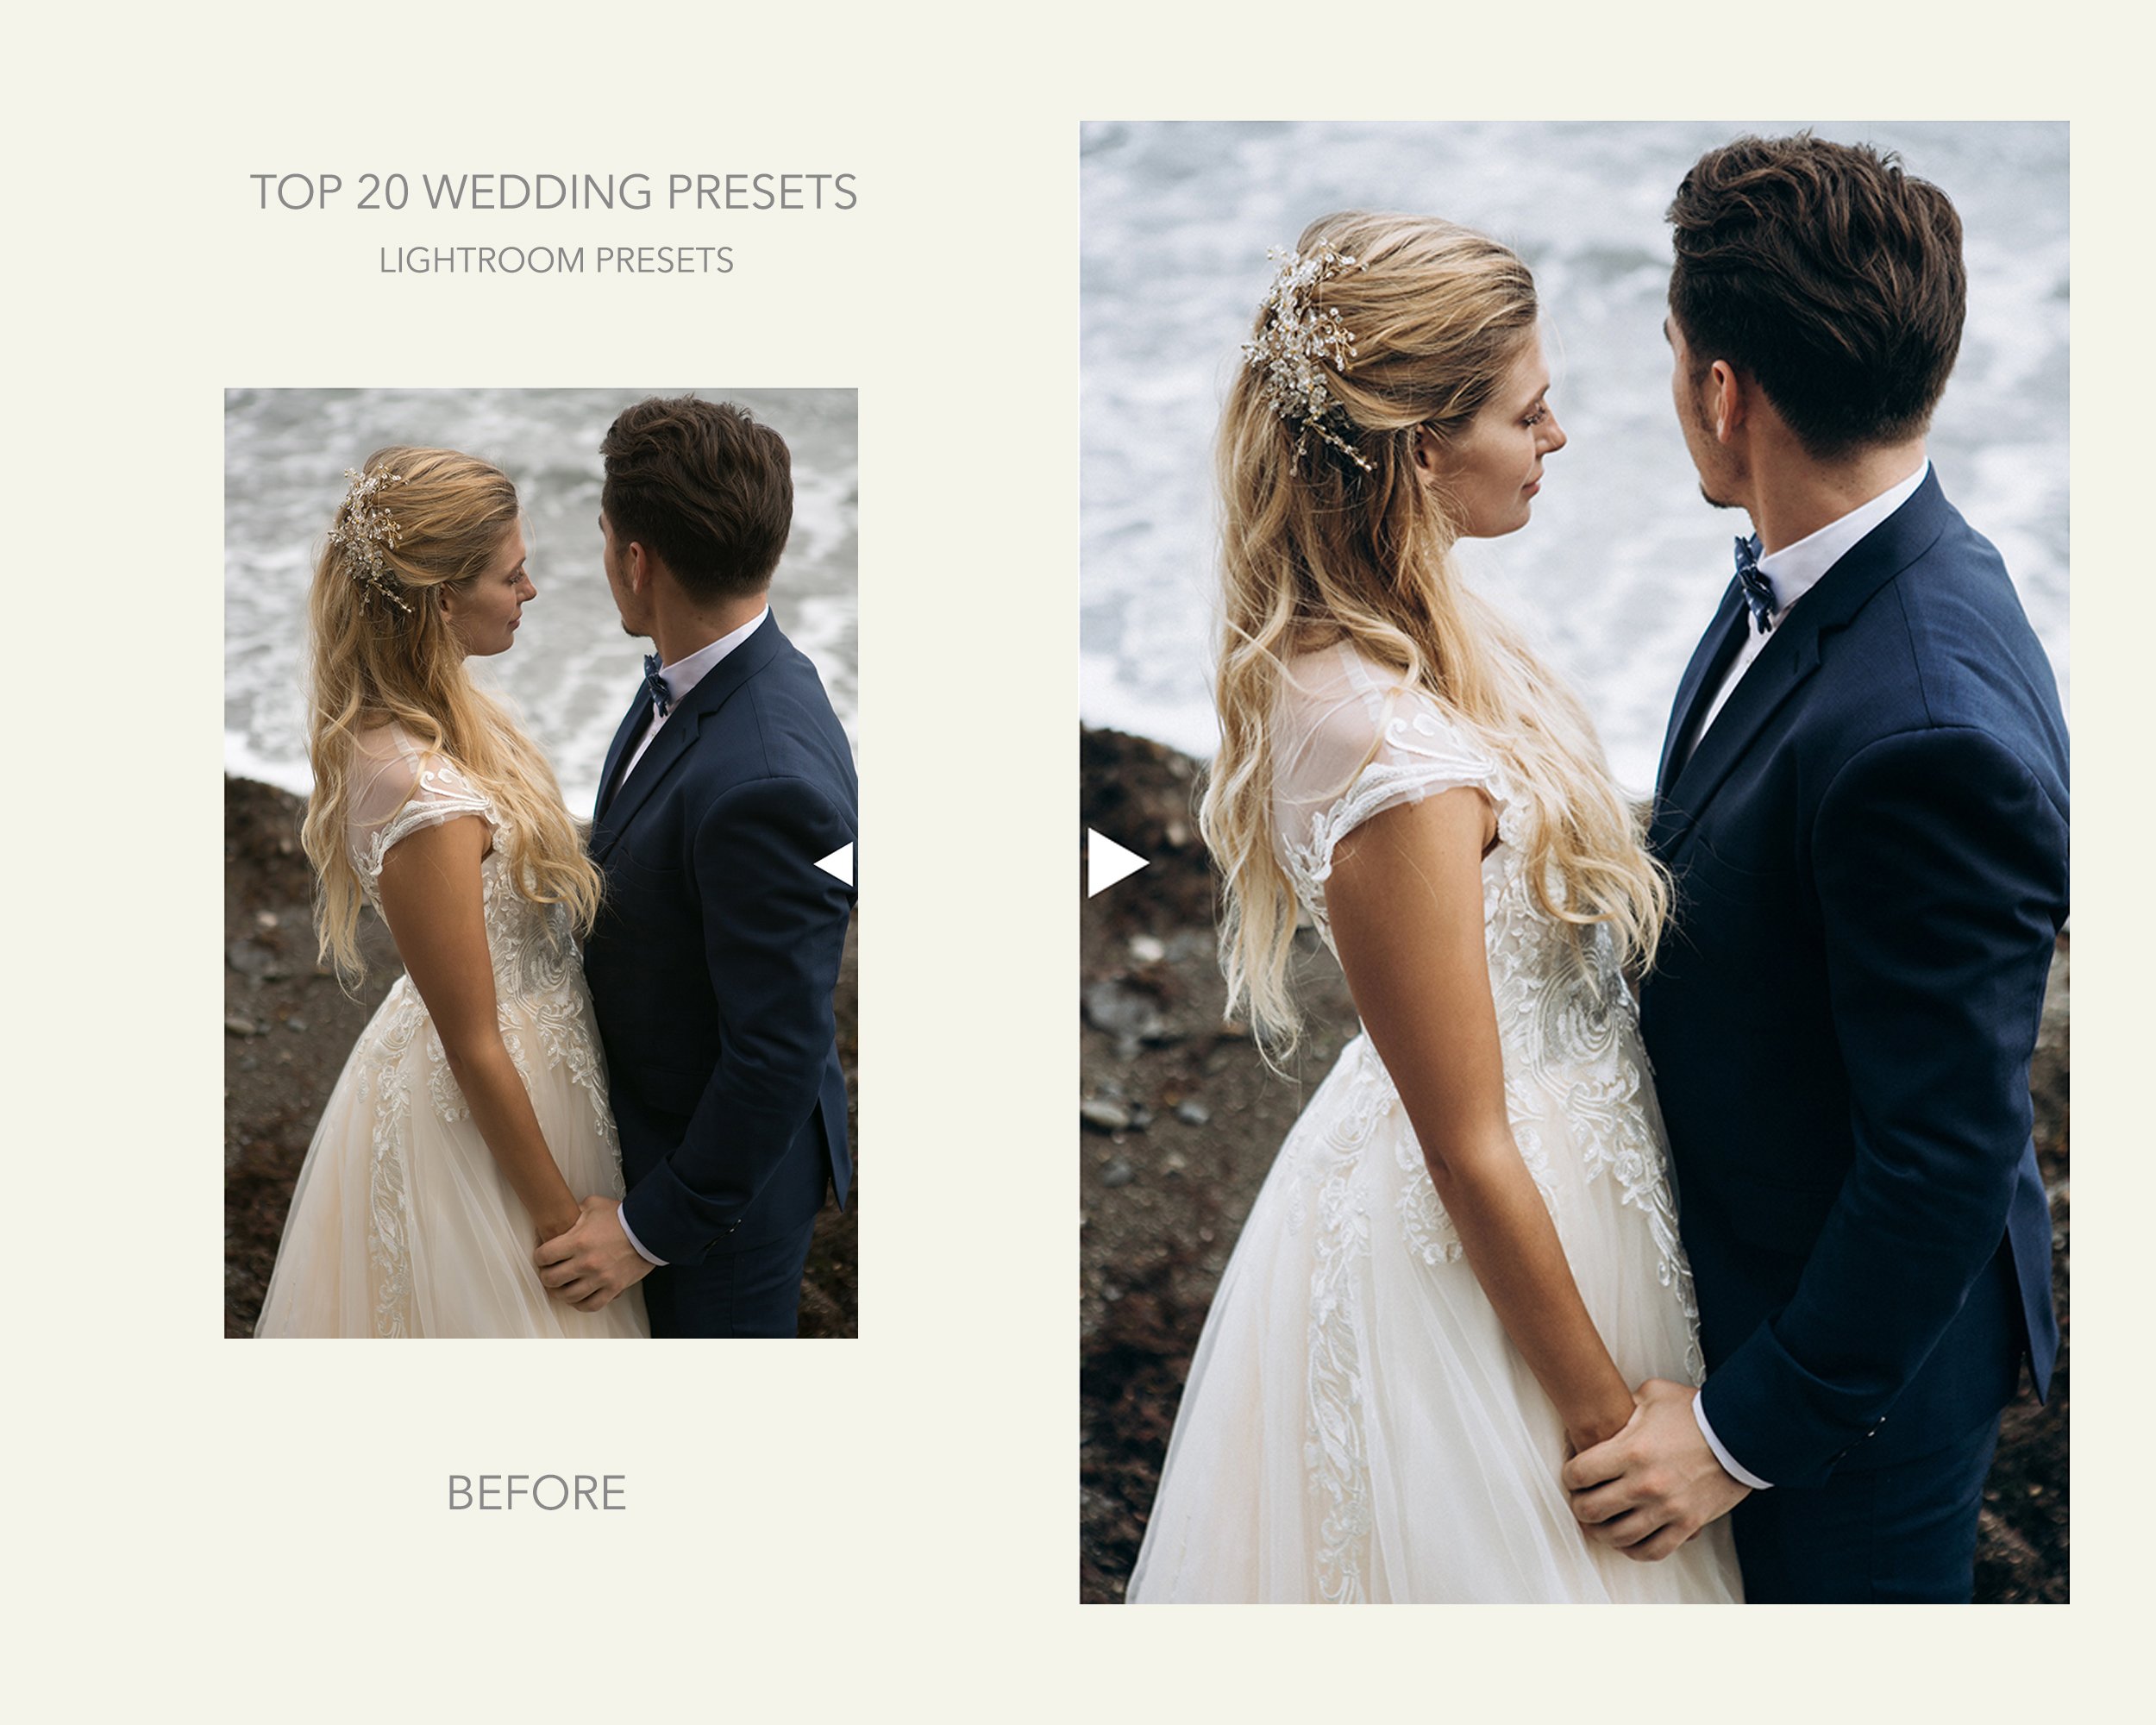 TOP 20 Lightroom Wedding Presetspreview image.